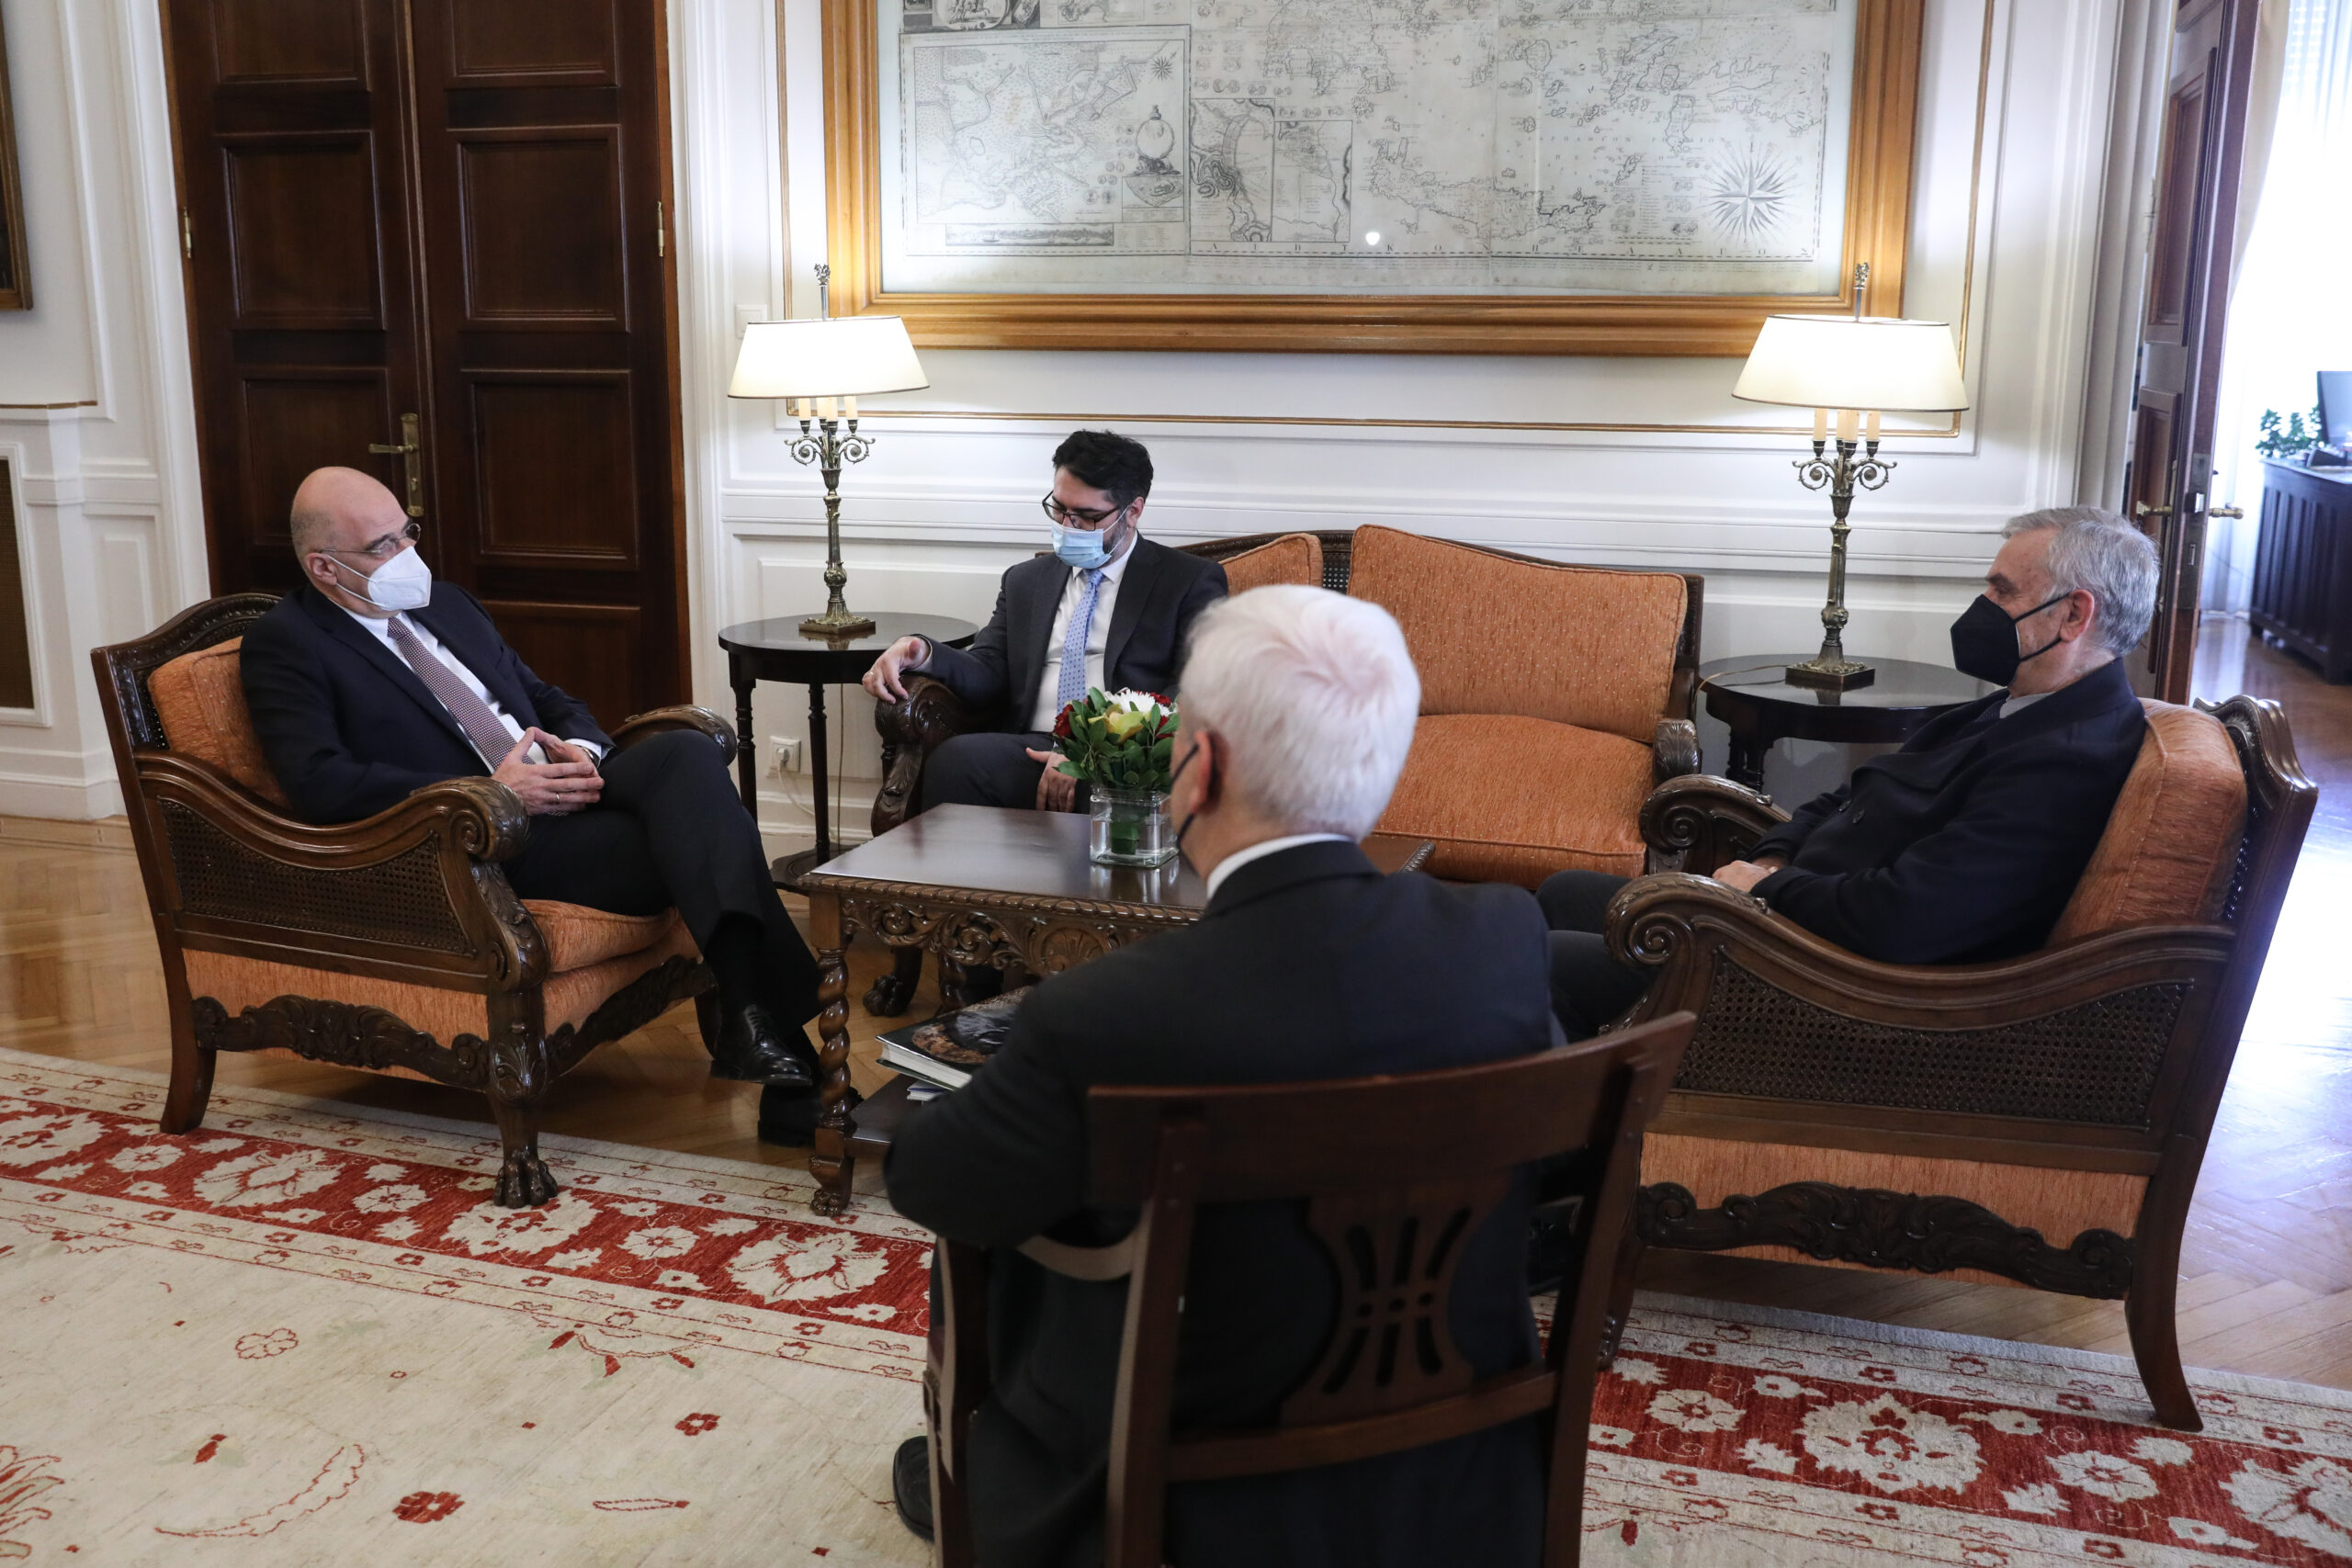 (Ξένη Δημοσίευση) Ο υπουργός Εξωτερικών Νίκος Δένδιας συναντάται με τον Γενικό Πρόξενο στη Μαριούπολη Μανώλη Ανδρουλάκη, τον γγ Θεμιστοκλή Δεμίρη, και τον  πατέρα του Γενικού Πρόξενου Γιώργο Ανδρουλάκη στο ΥΠΕΞ, Τρίτη 22 Μαρτίου 2022. ΑΠΕ-ΜΠΕ /ΑΠΕ-ΜΠΕ/ ΥΠΕΞ